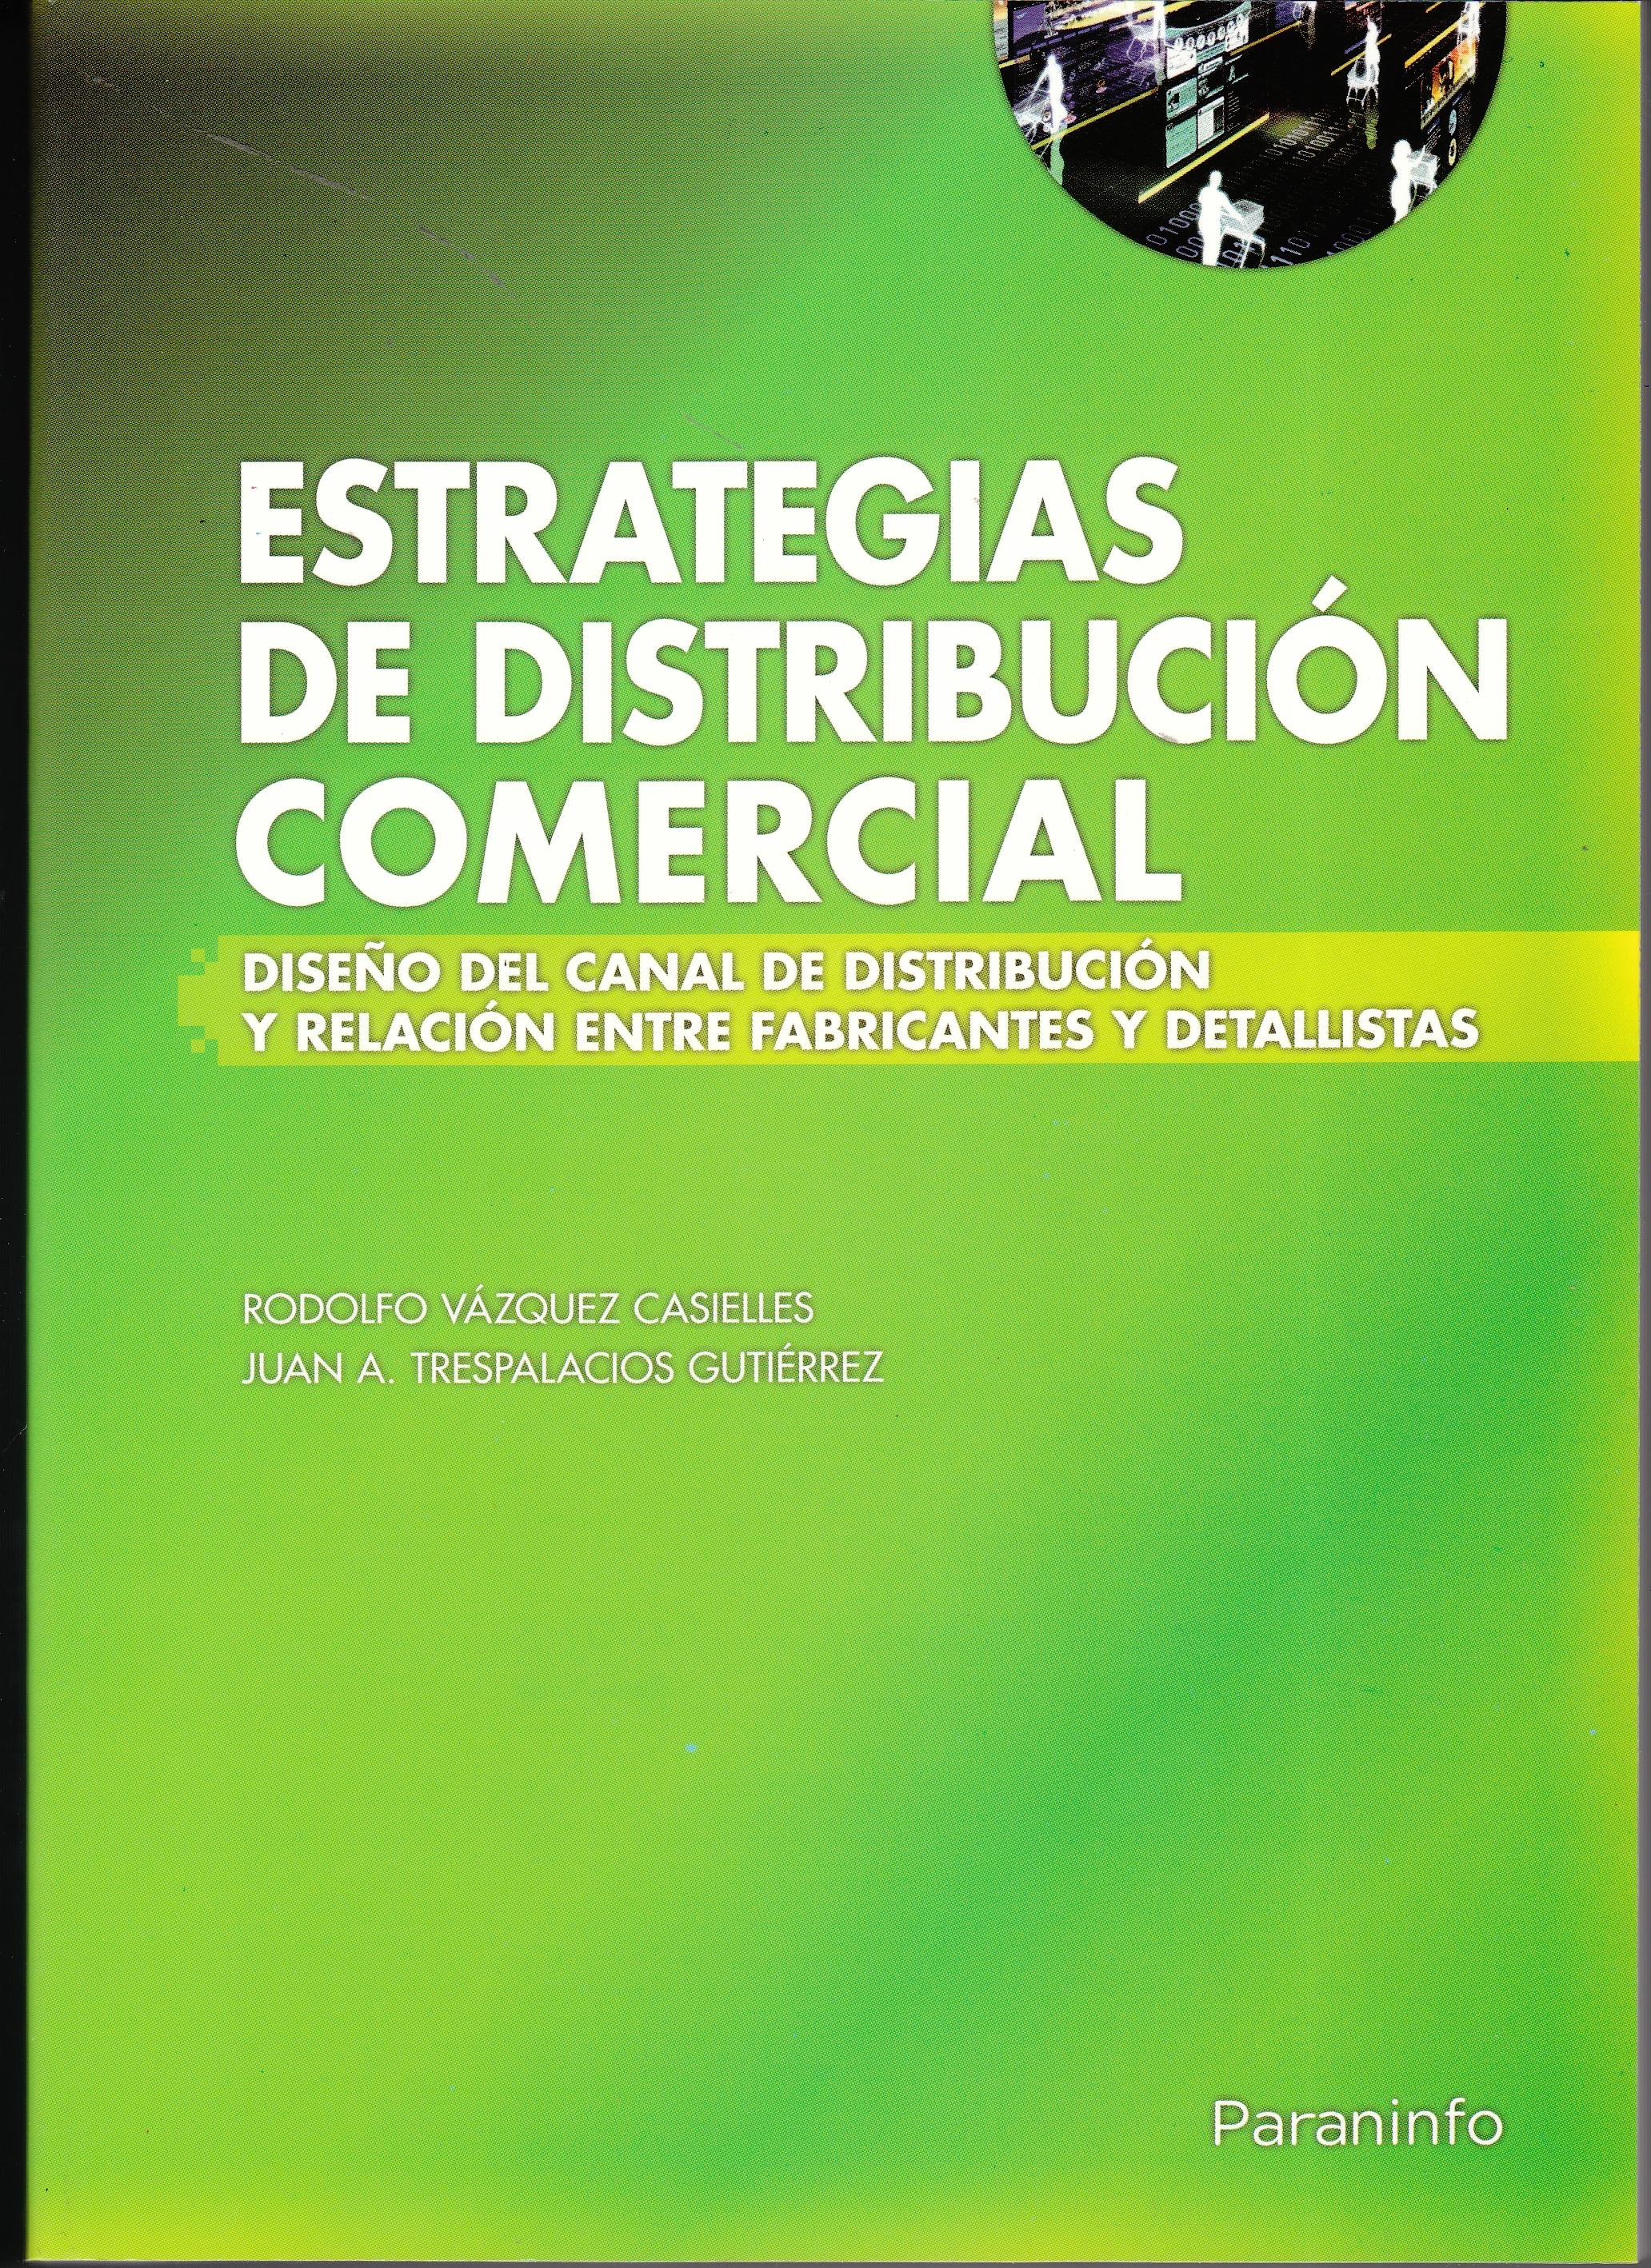 Estrategias de Distribución Comercial "Diseño del Canal de Distribución y Relación Entre Fabricantes..."